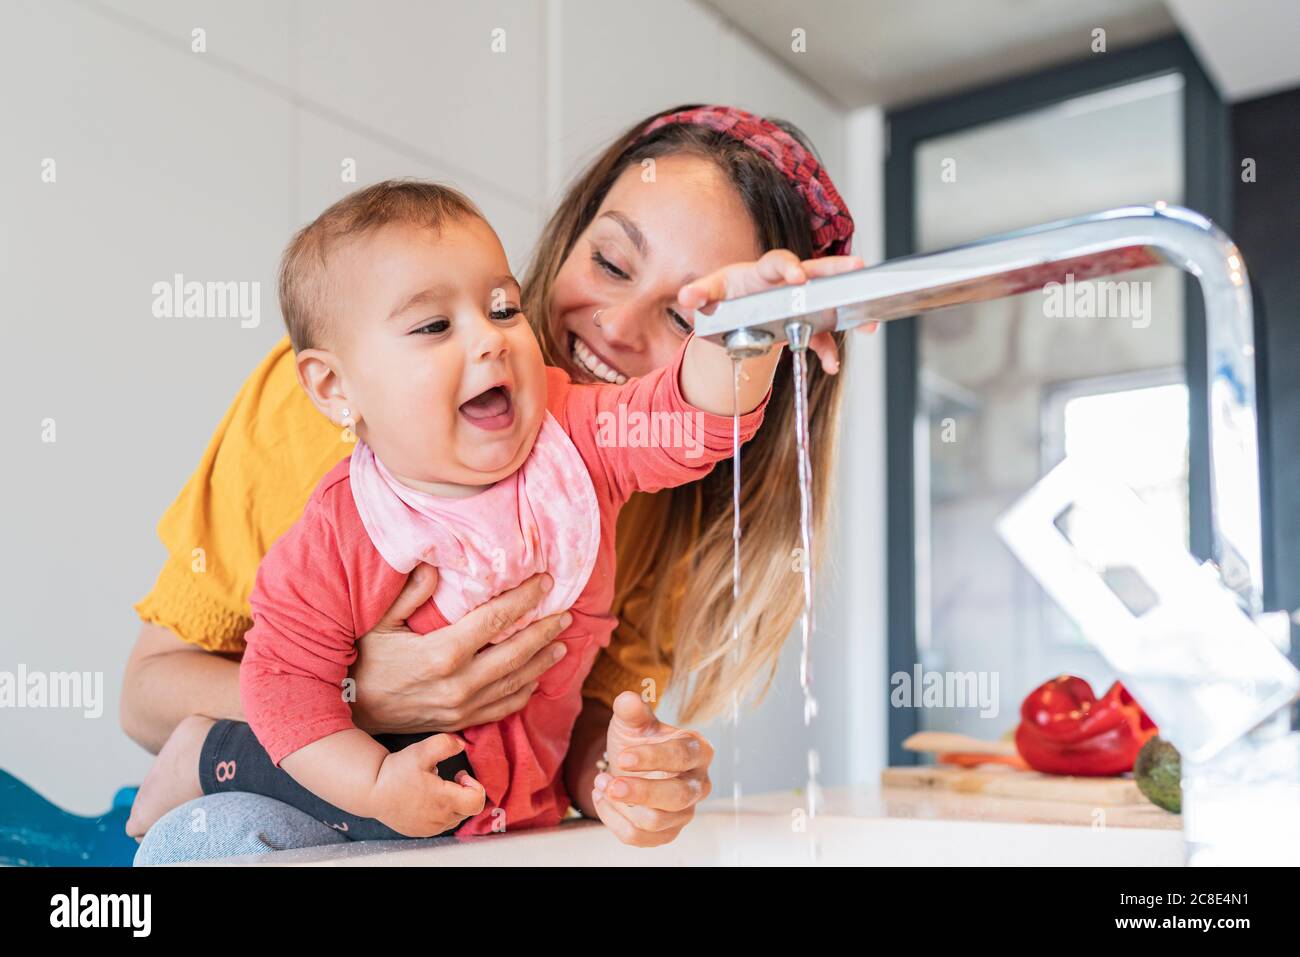 Close-up von lächelnden Mutter hält niedlichen Baby Mädchen spielen mit Wasserhahn in der Küche Stockfoto